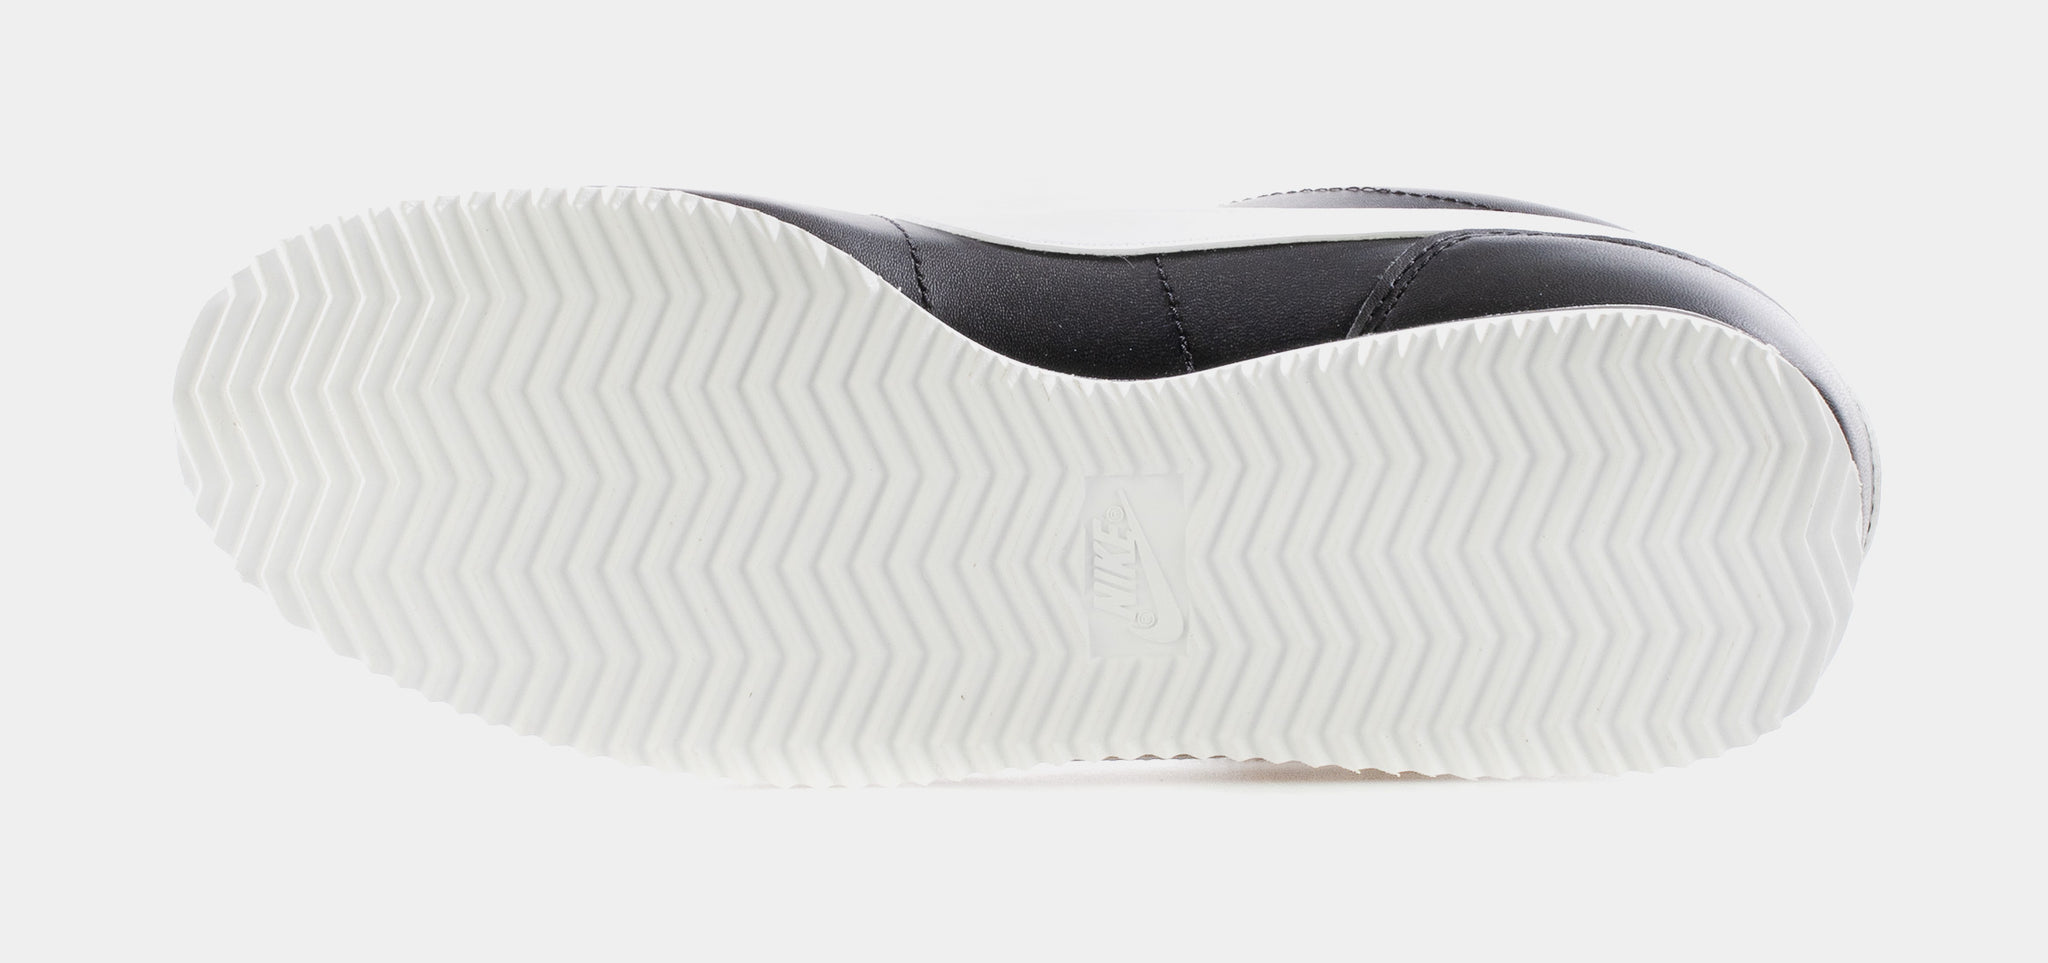 New Nike Cortez Basic Leather “White Black Amarillo” BV2527-100 Mens 11.5  Lakers